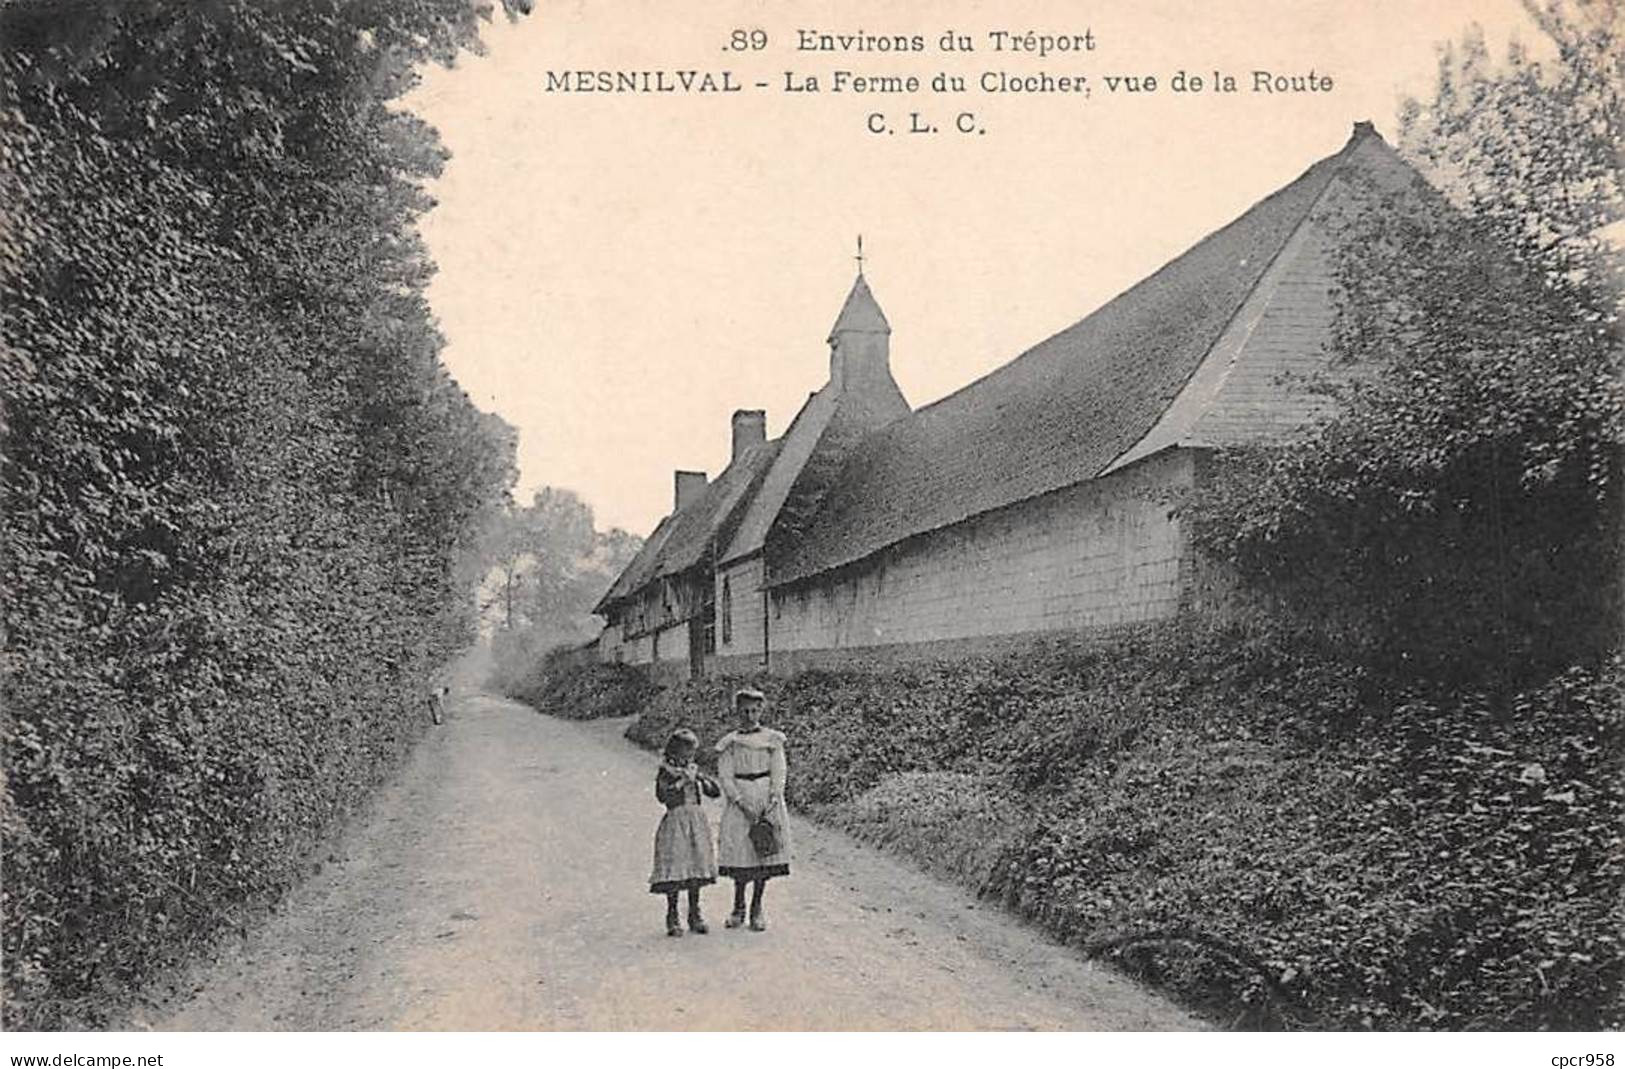 76 - MESNILVAL -  SAN26181 - La Ferme Du Clocher - Vue De La Route - Mesnil-Val